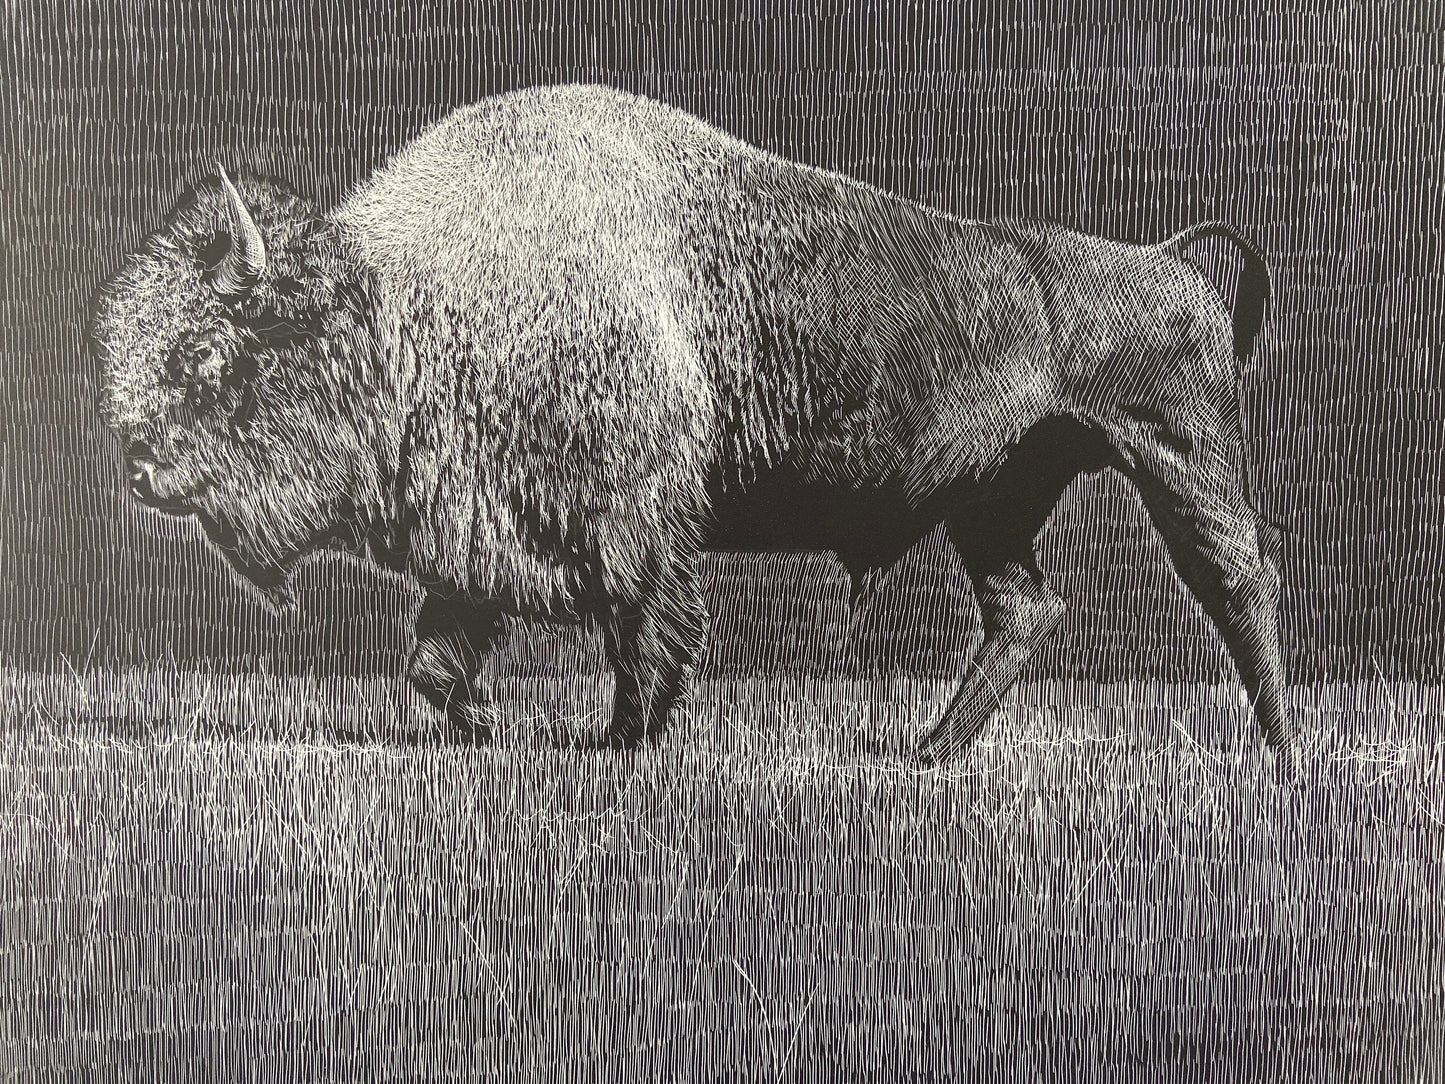 Buffalo Etching - 18x24 giclee print